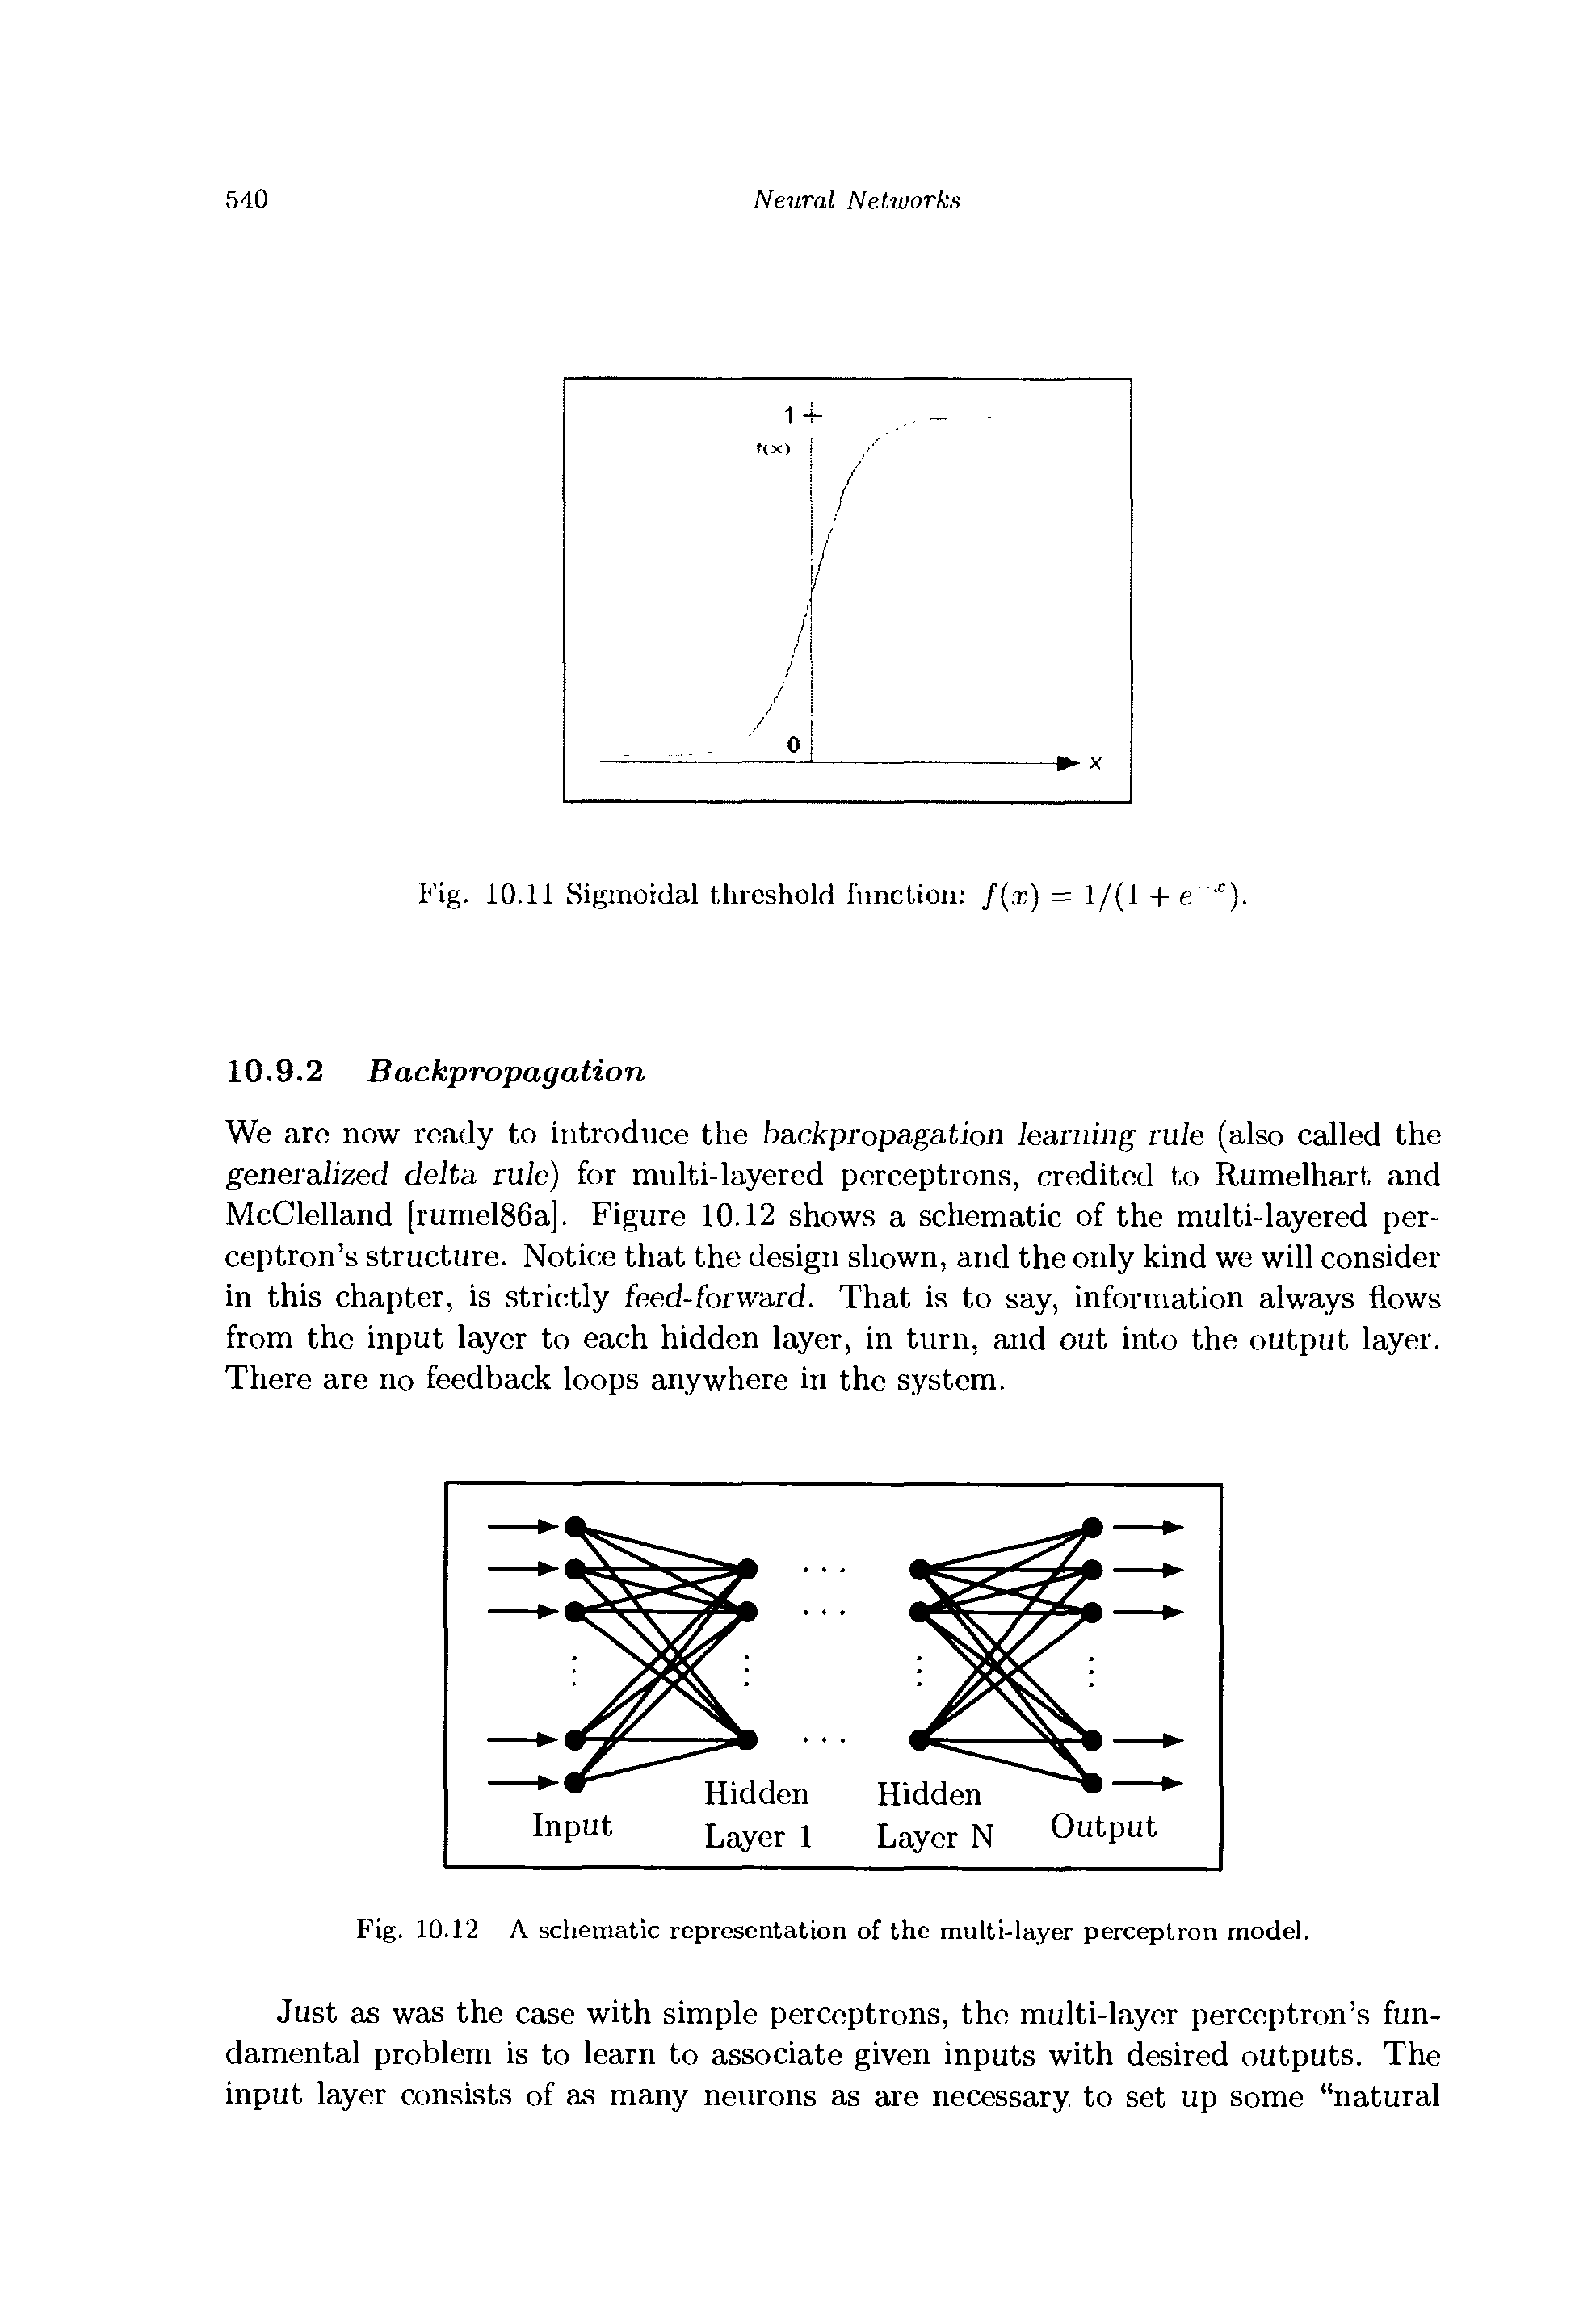 Fig. 10.12 A schematic representation of the multi-layer perceptron model.